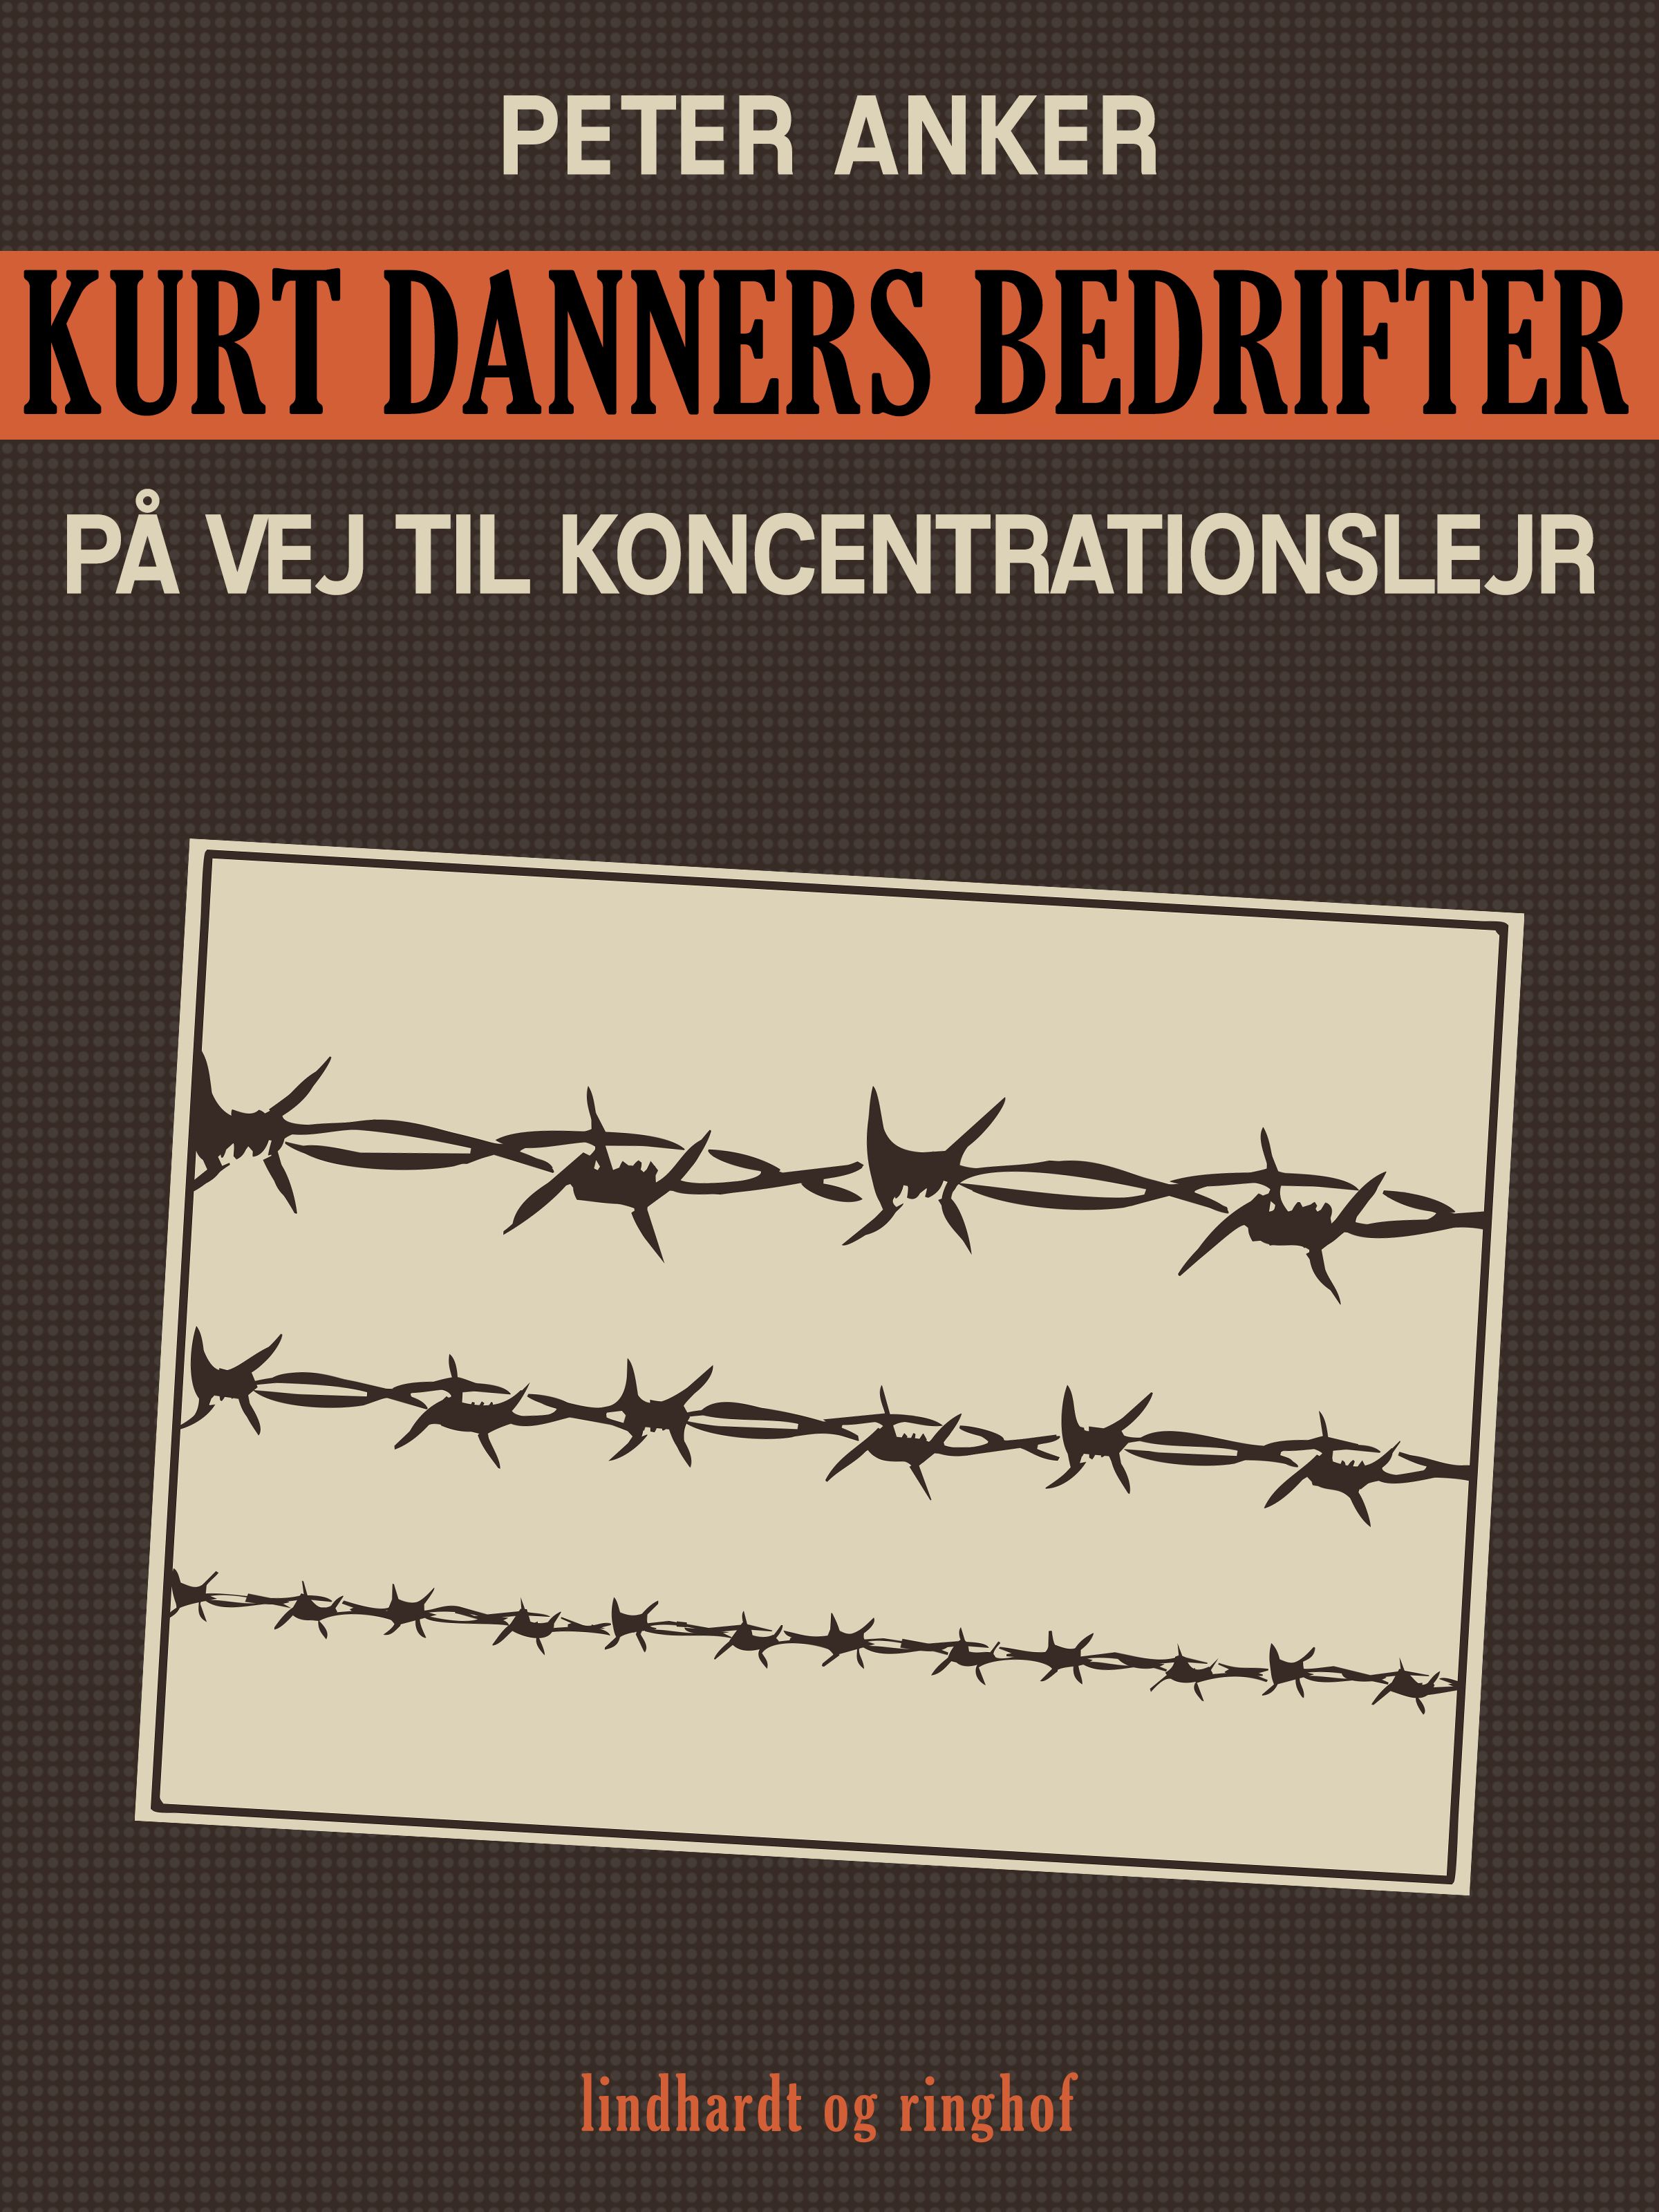 Kurt Danners bedrifter: På vej til koncentrationslejr, e-bok av Peter Anker